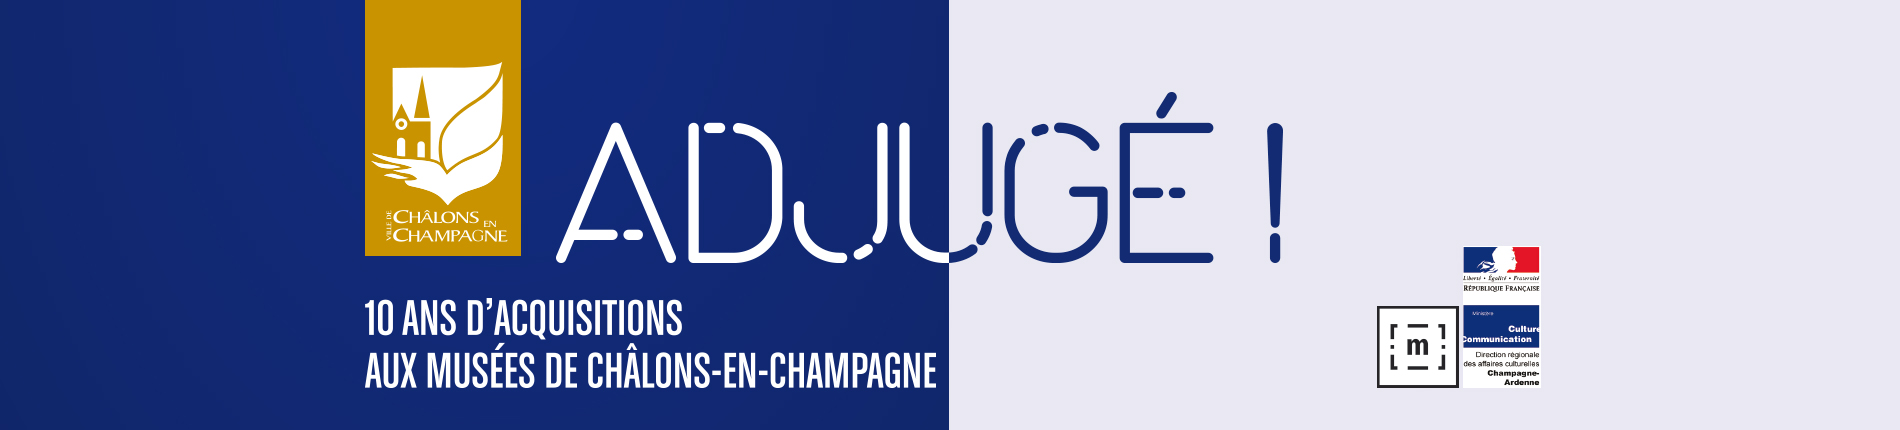 Adjugé ! 10 ans d'acquisitions aux musées de châlons-en-champagne